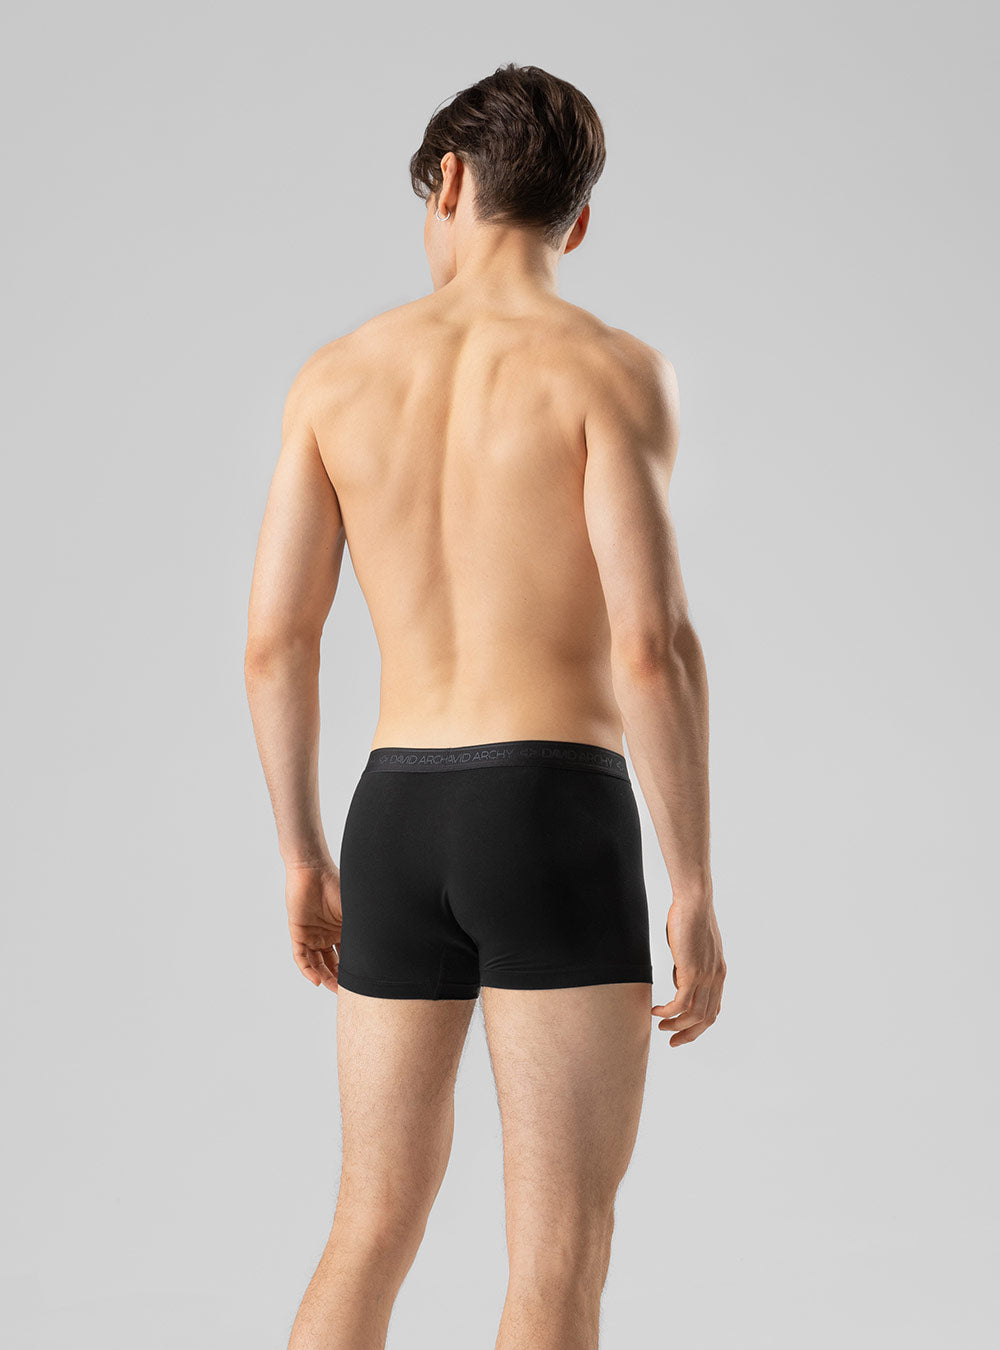 Separatec Dual Pouch Mens Underwear Quick Dry Boxer Briefs For Men